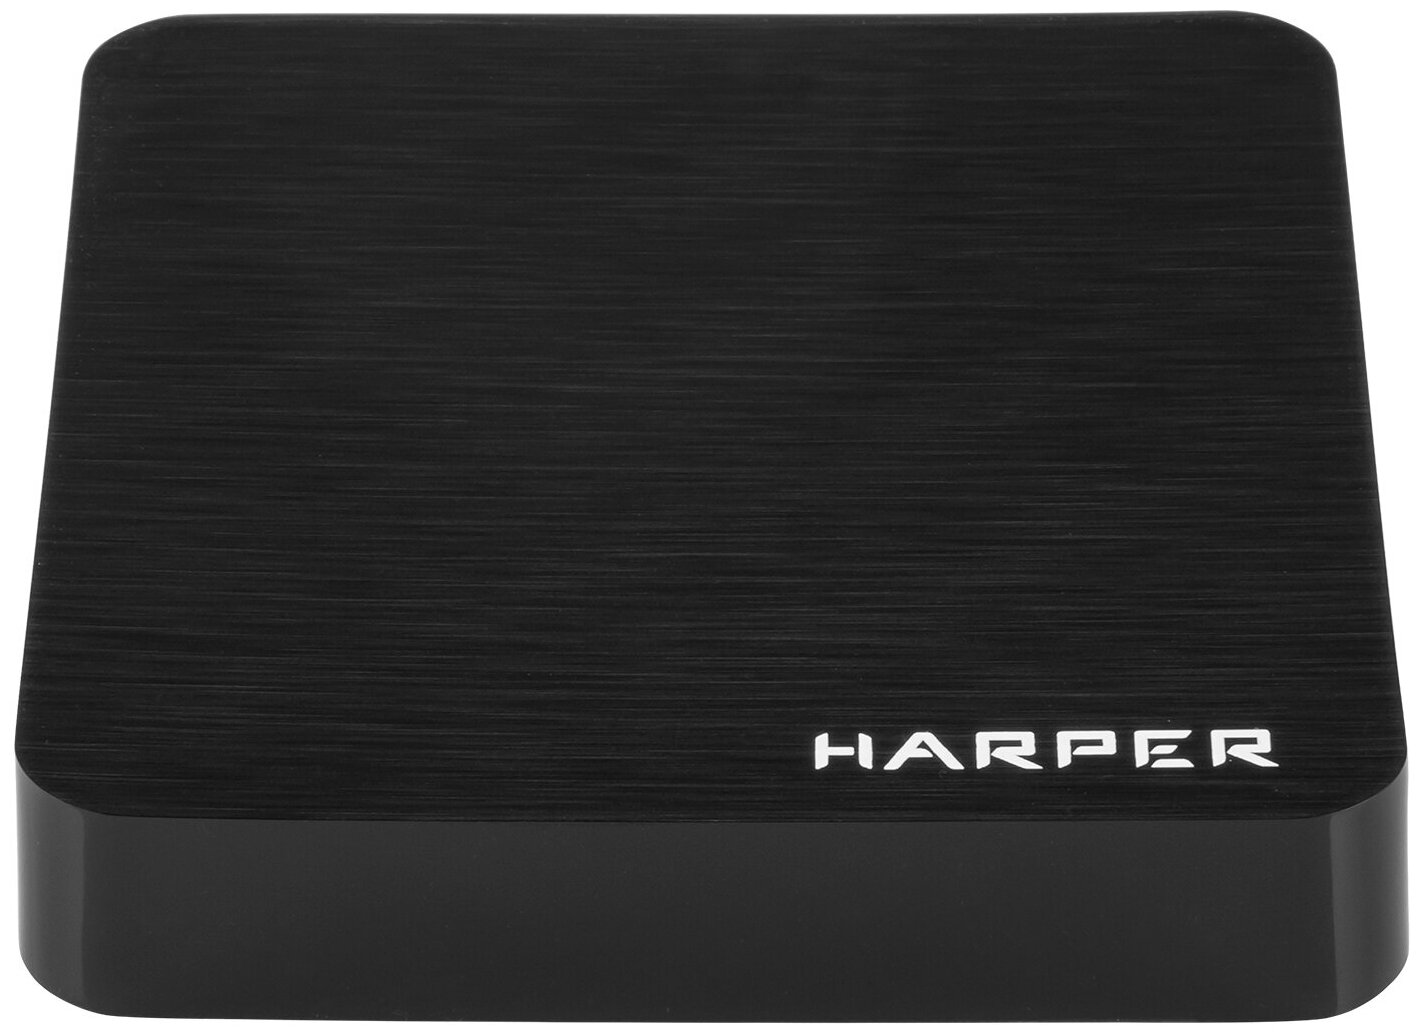 Медиаплеер HARPER ABX-110, черный